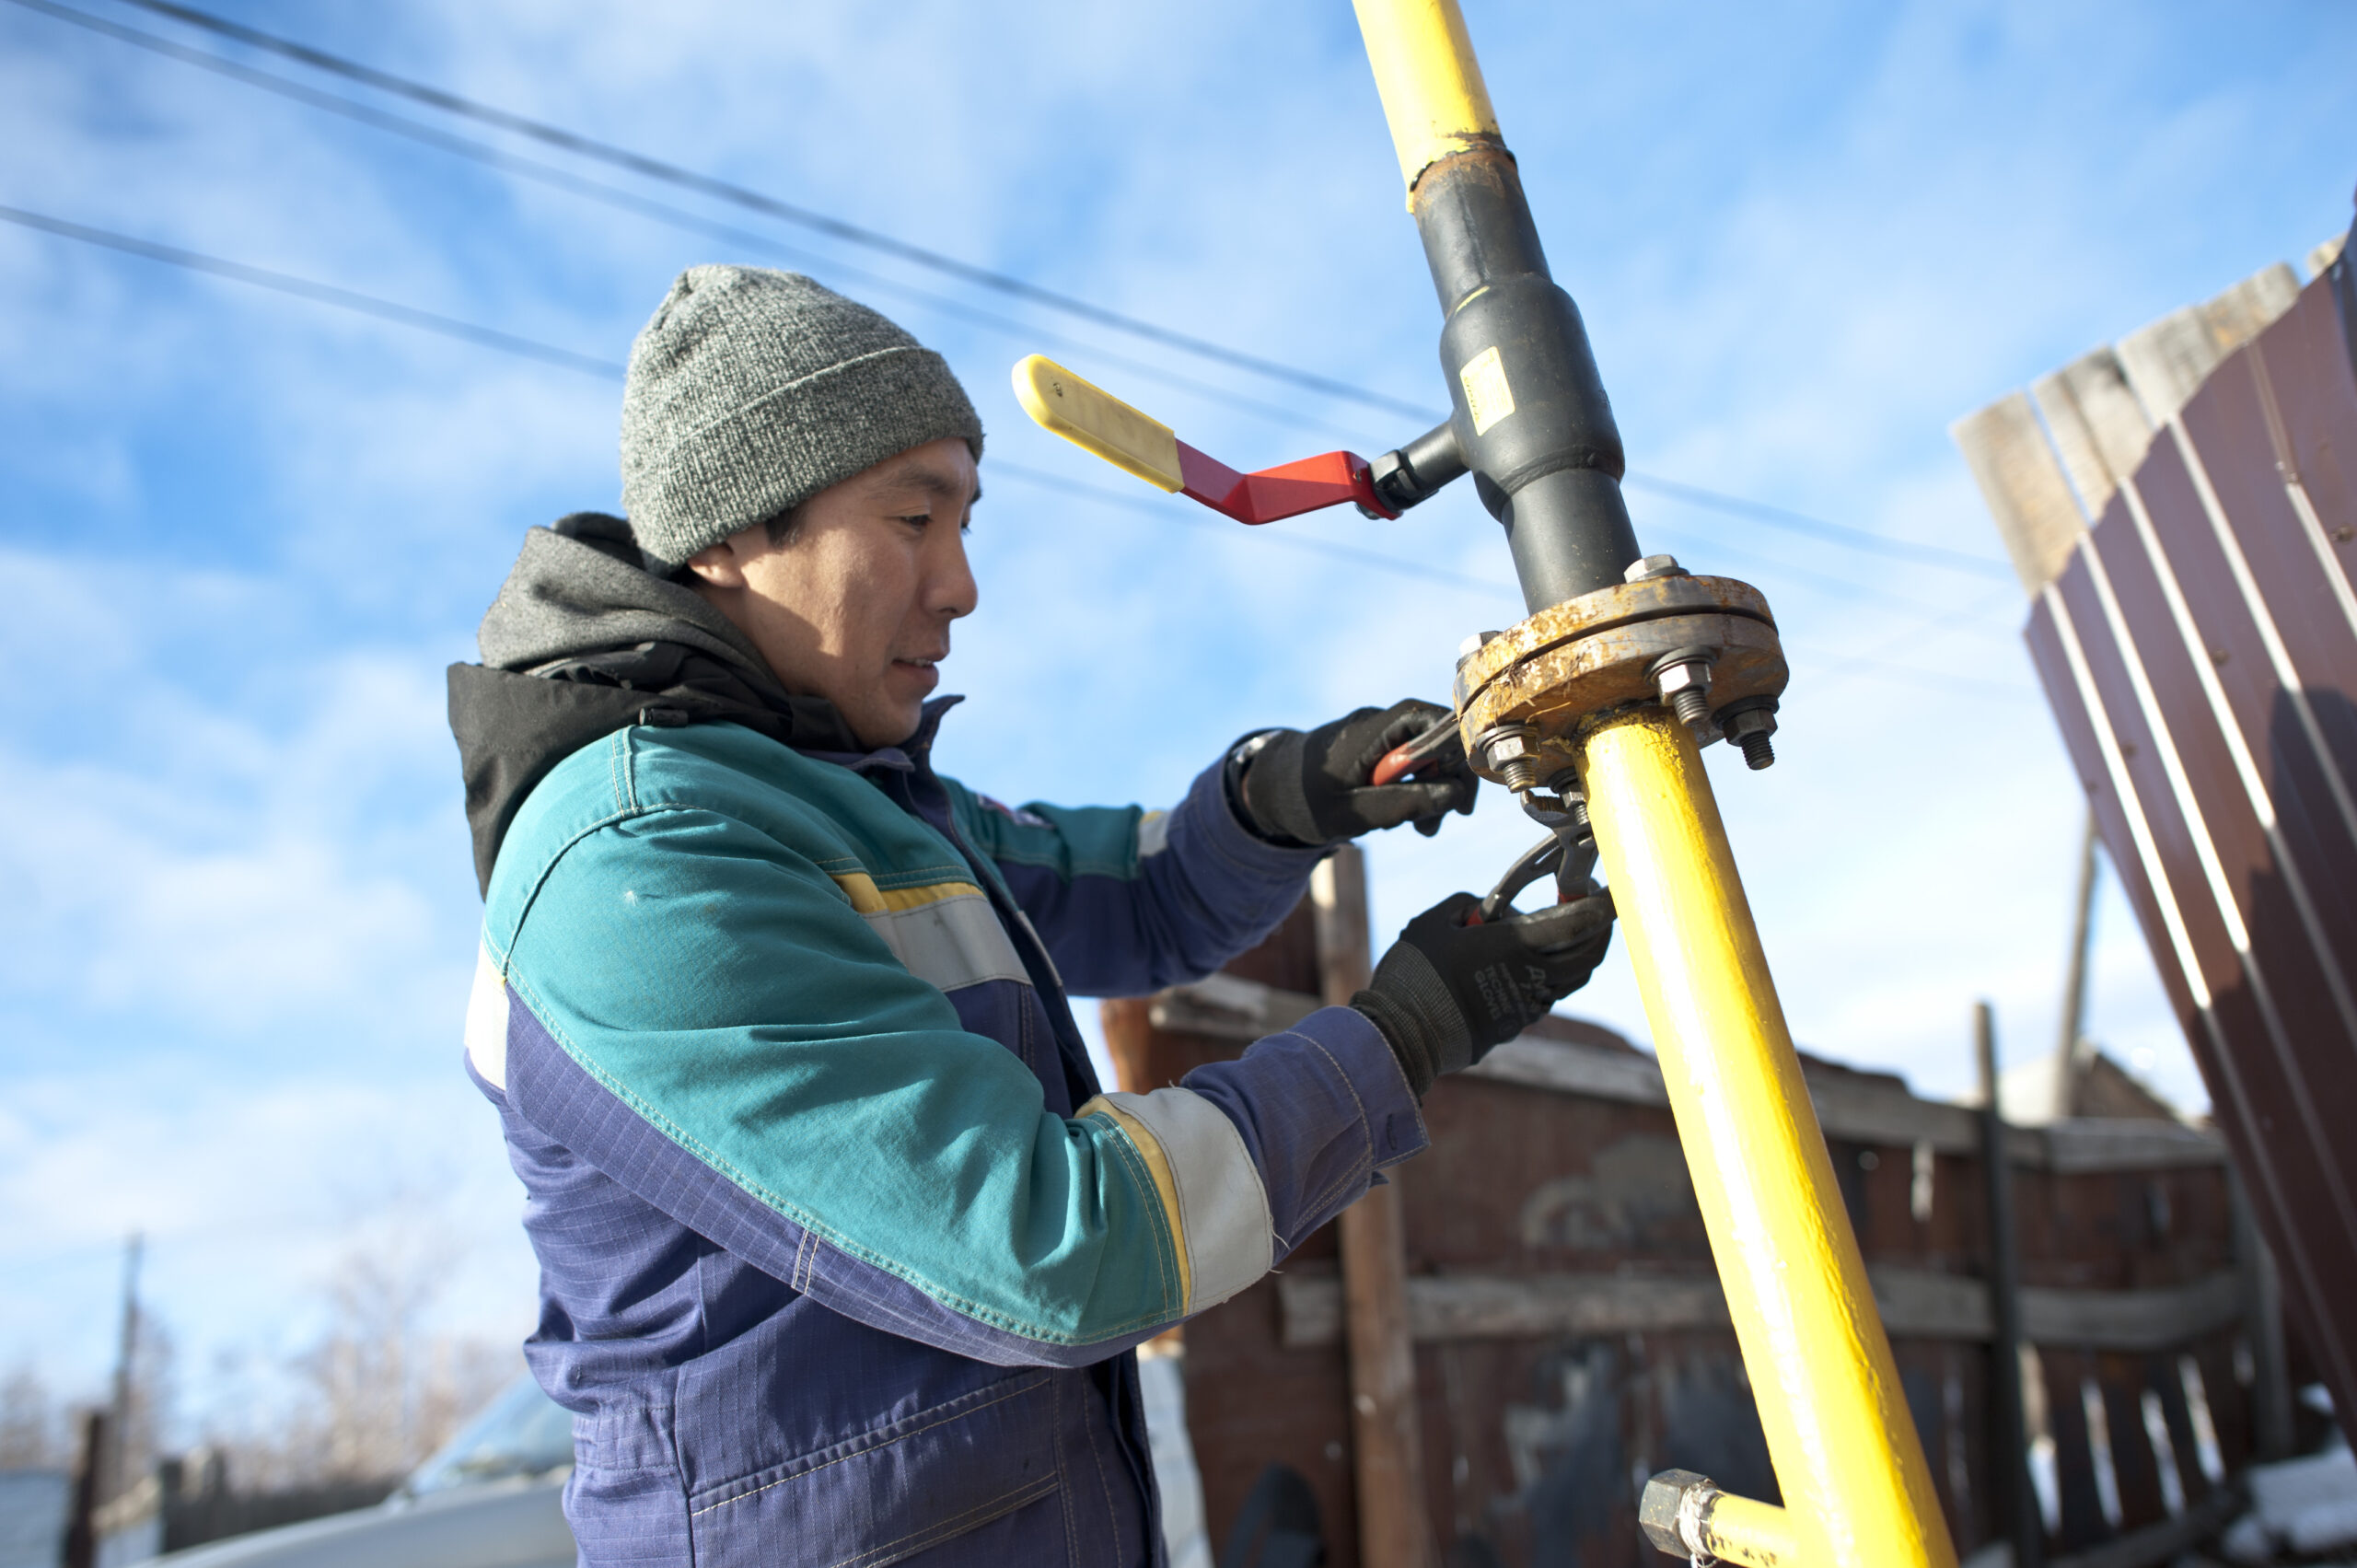 Помощь на газификацию дома получили почти 1,5 тысячи семей в Якутии